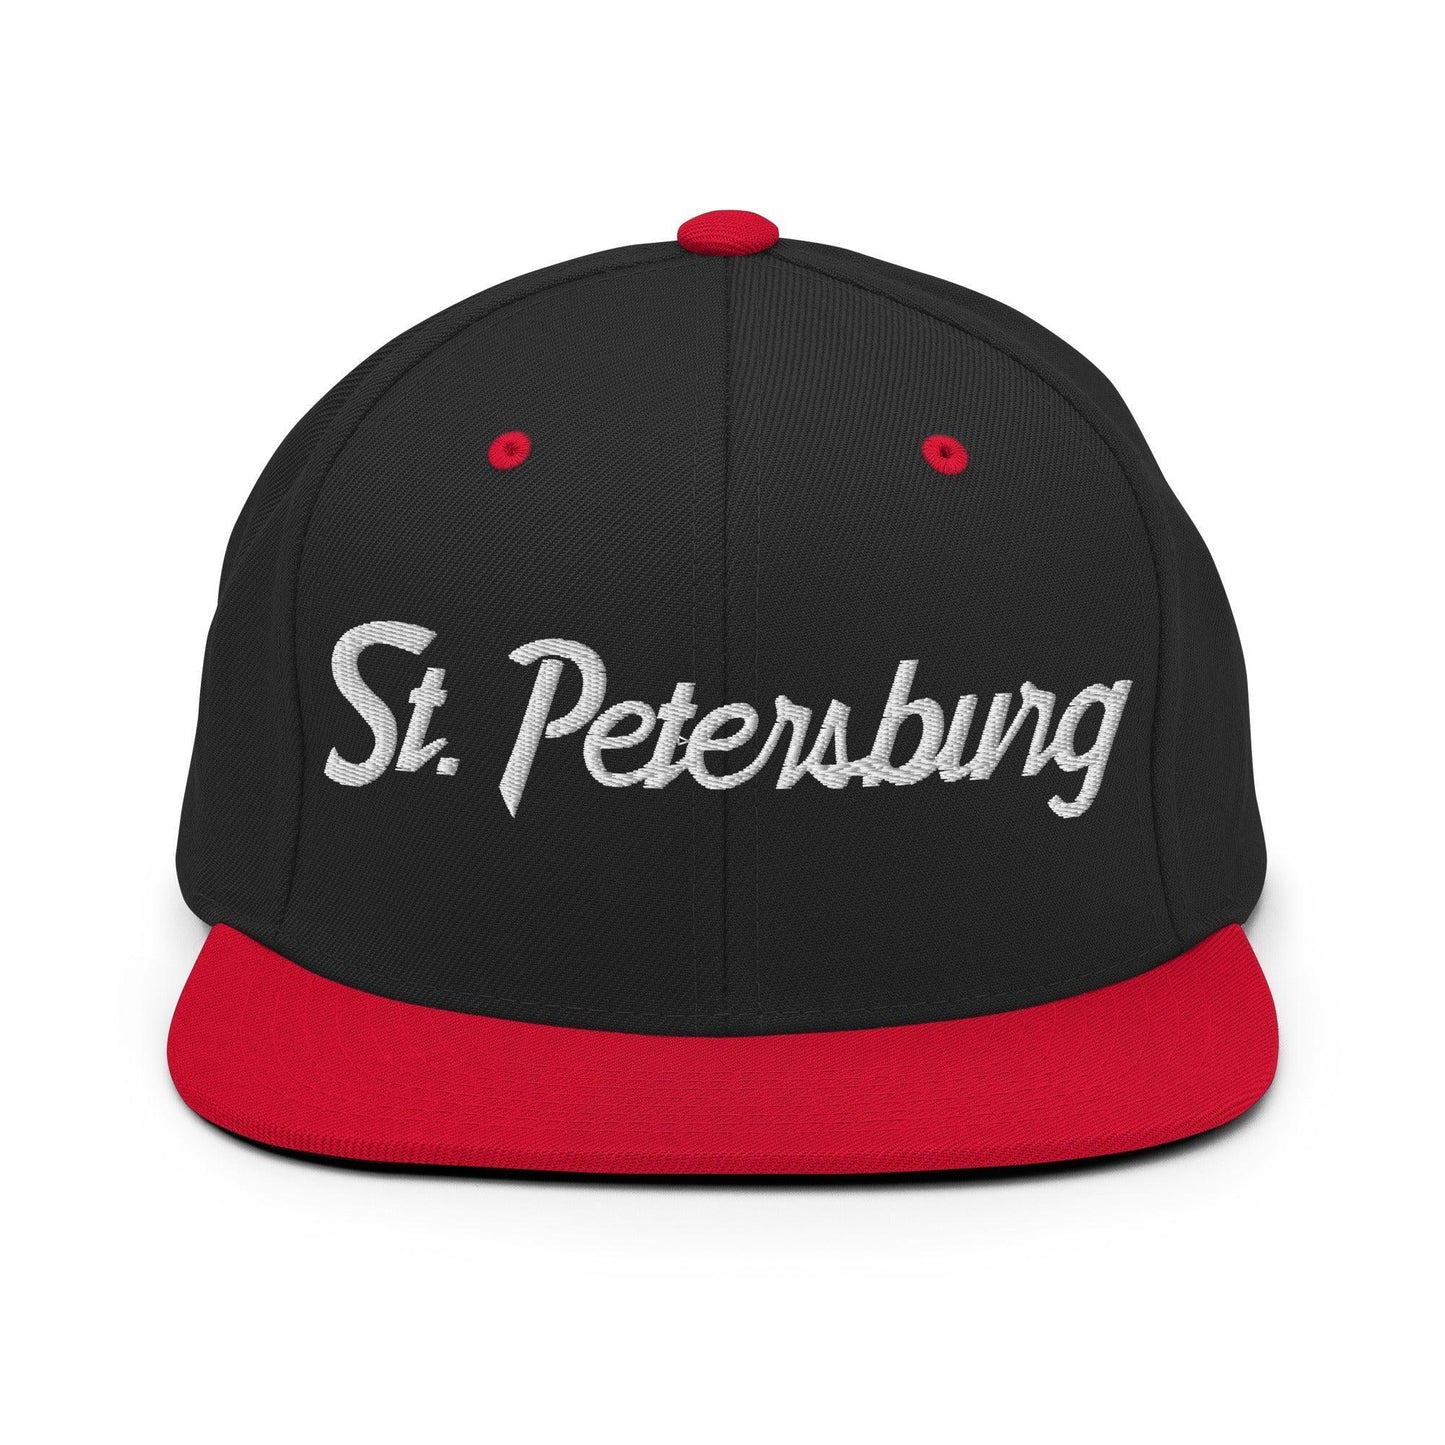 St. Petersburg Script Snapback Hat Black Red